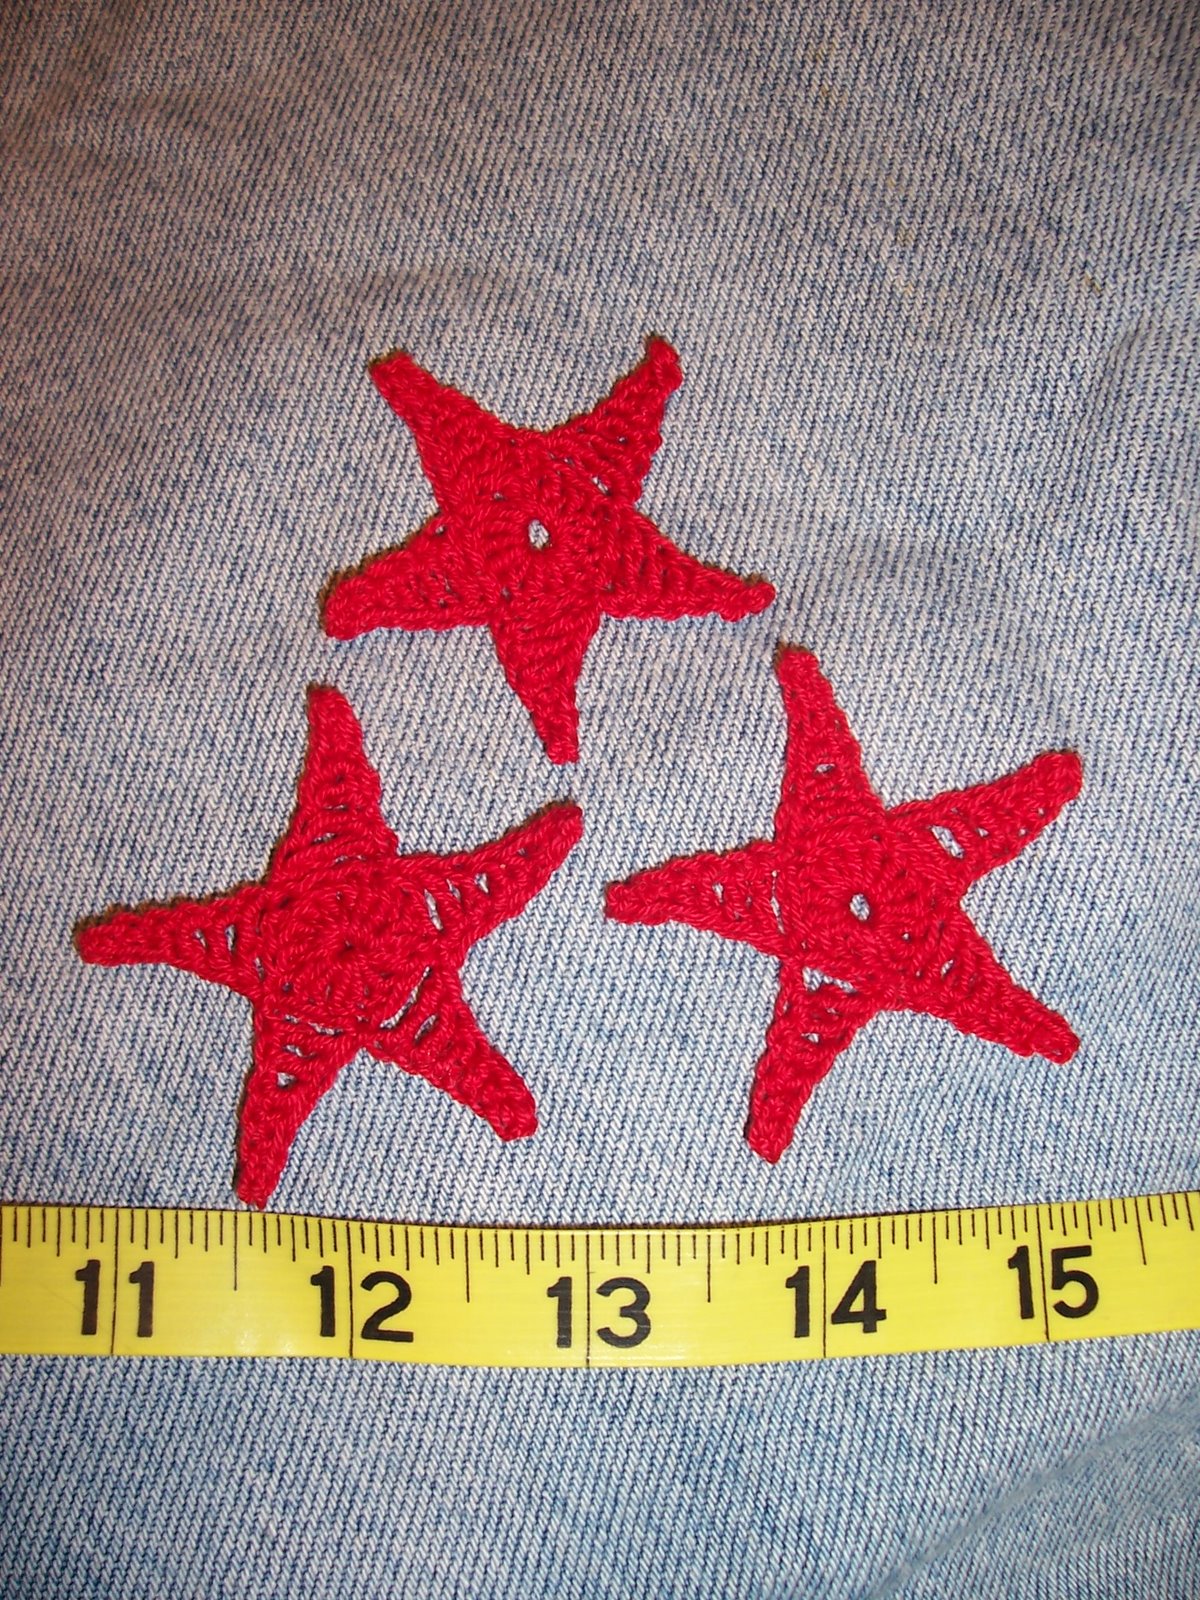 [crochet_star_aplique_red_2.JPG]